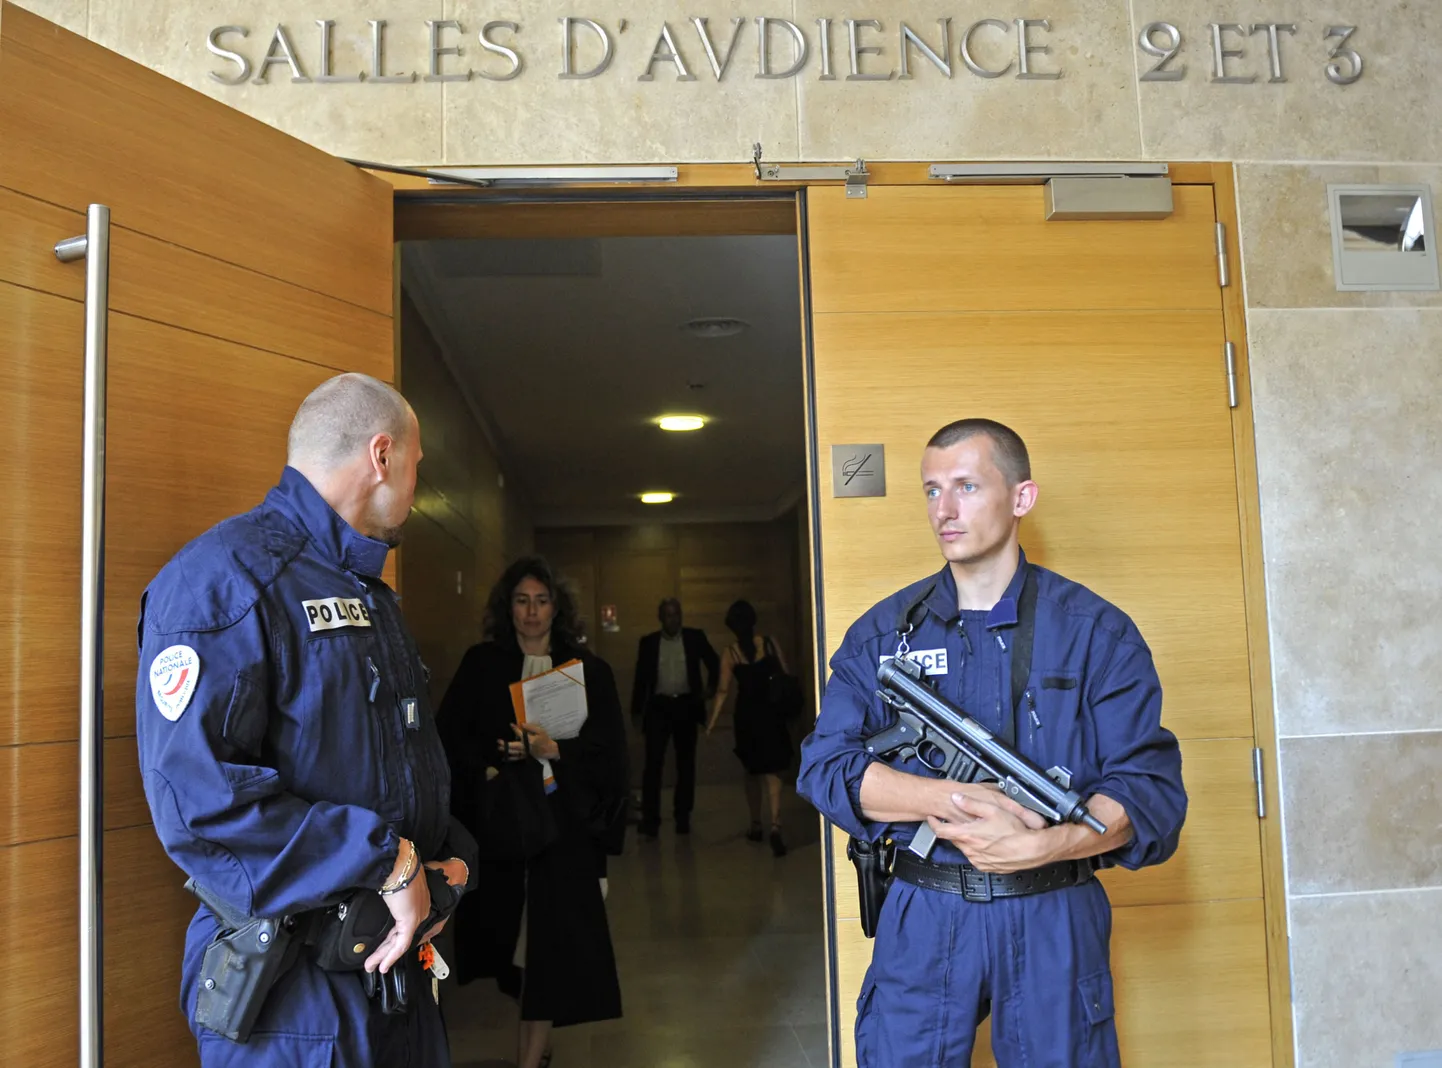 Prantsuse politseinikud kohtumajas.